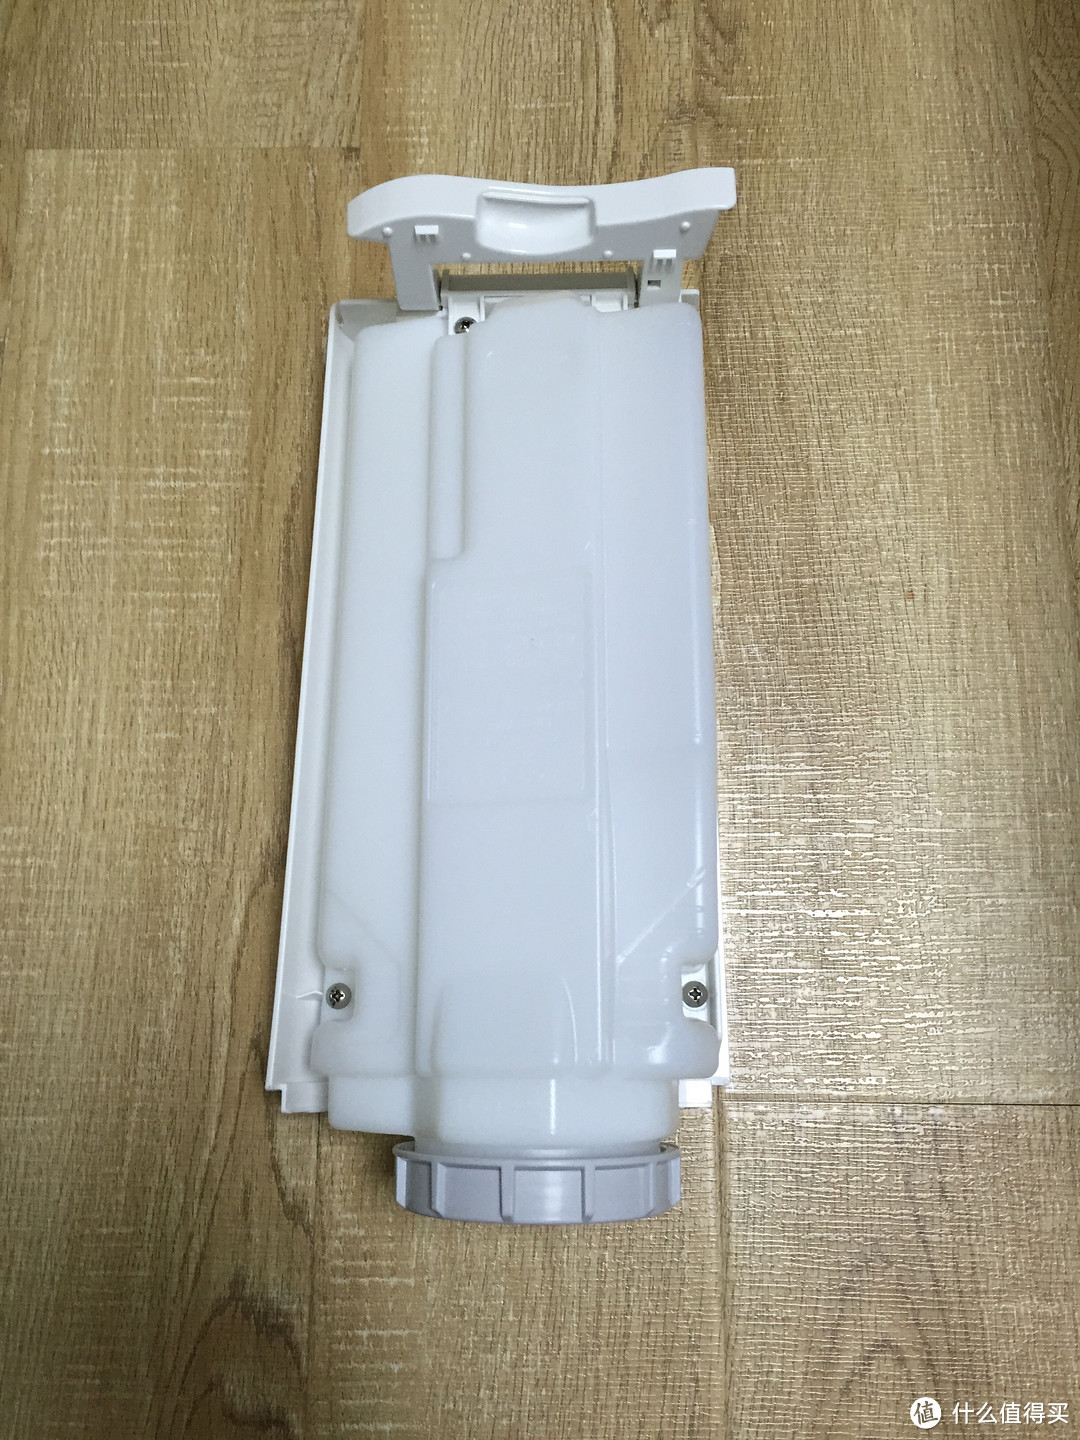 海淘 夏普KC-E50-W 空气净化器 晒单